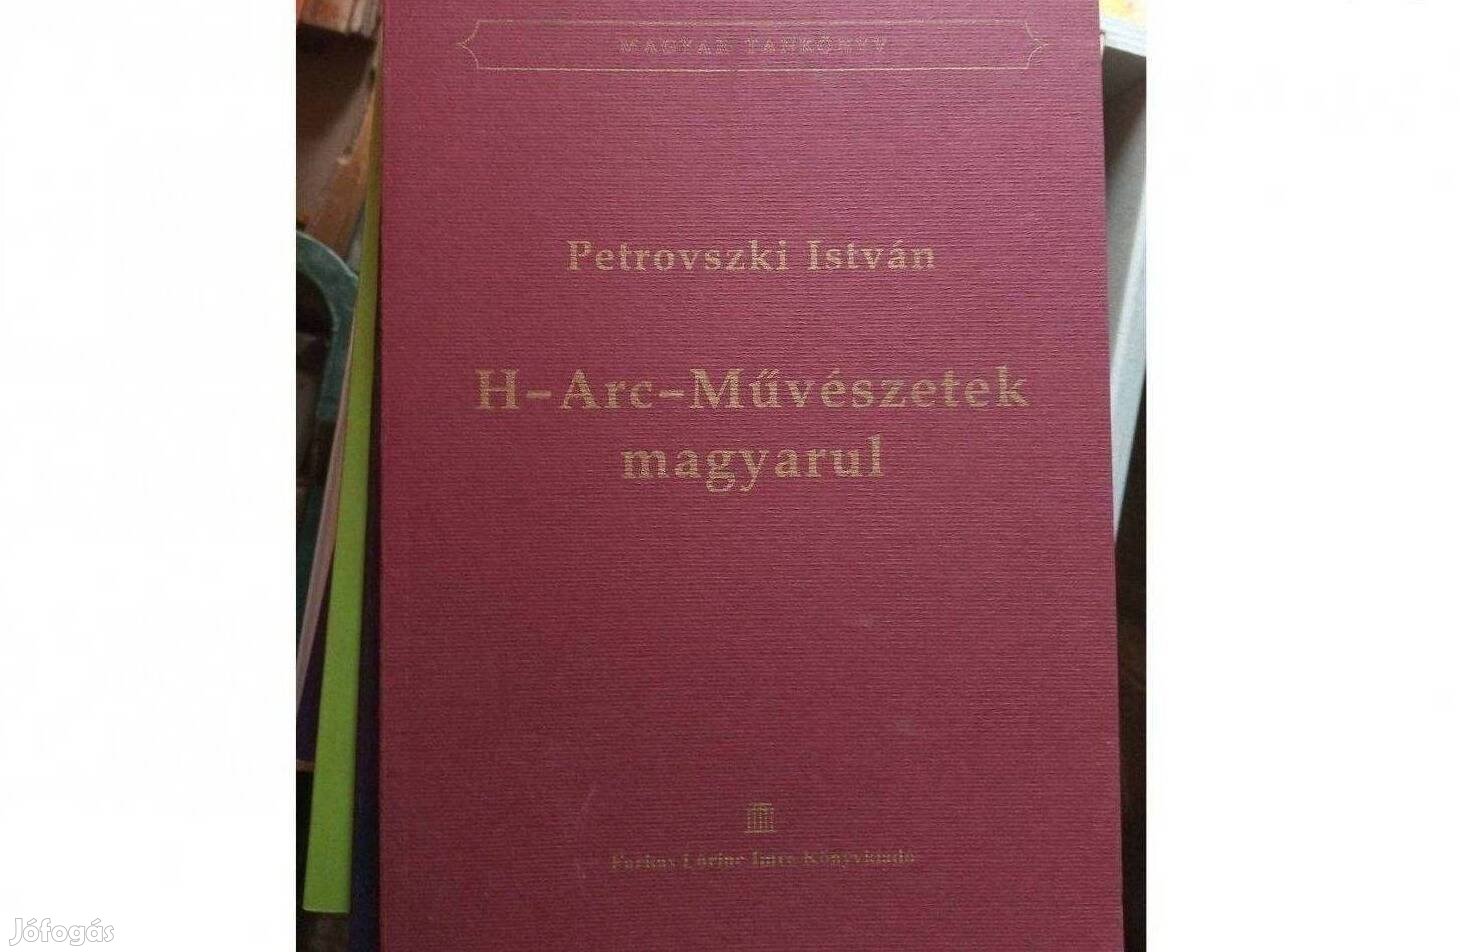 Petrovszki István H-Arc-Művészetek című könyve magyarul. Új állapot